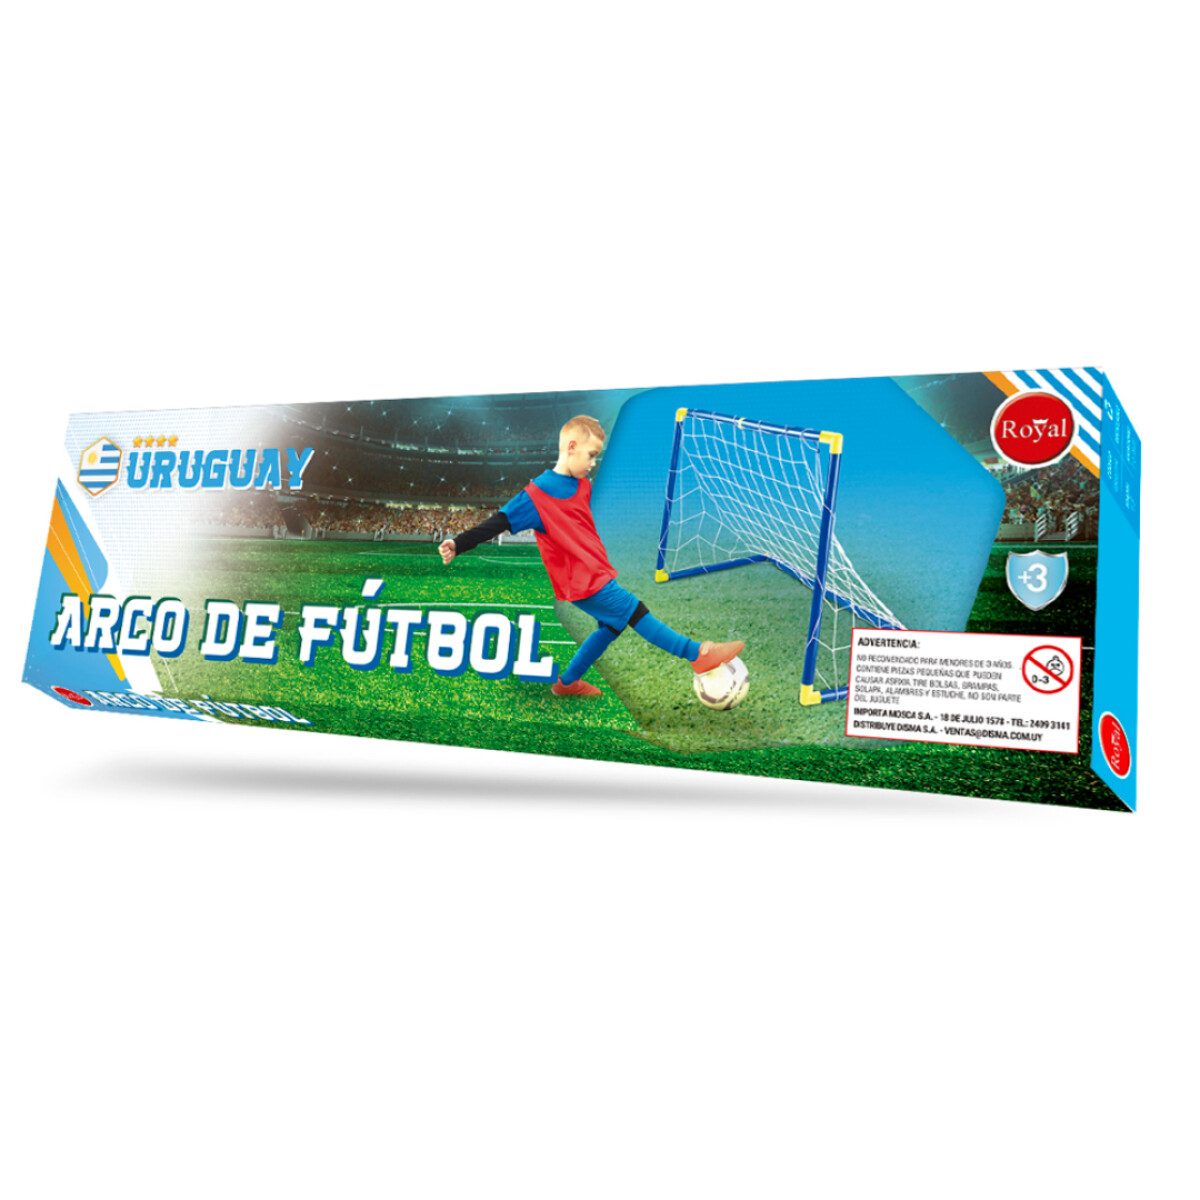 Arco de Fútbol Uruguay Royal - 001 